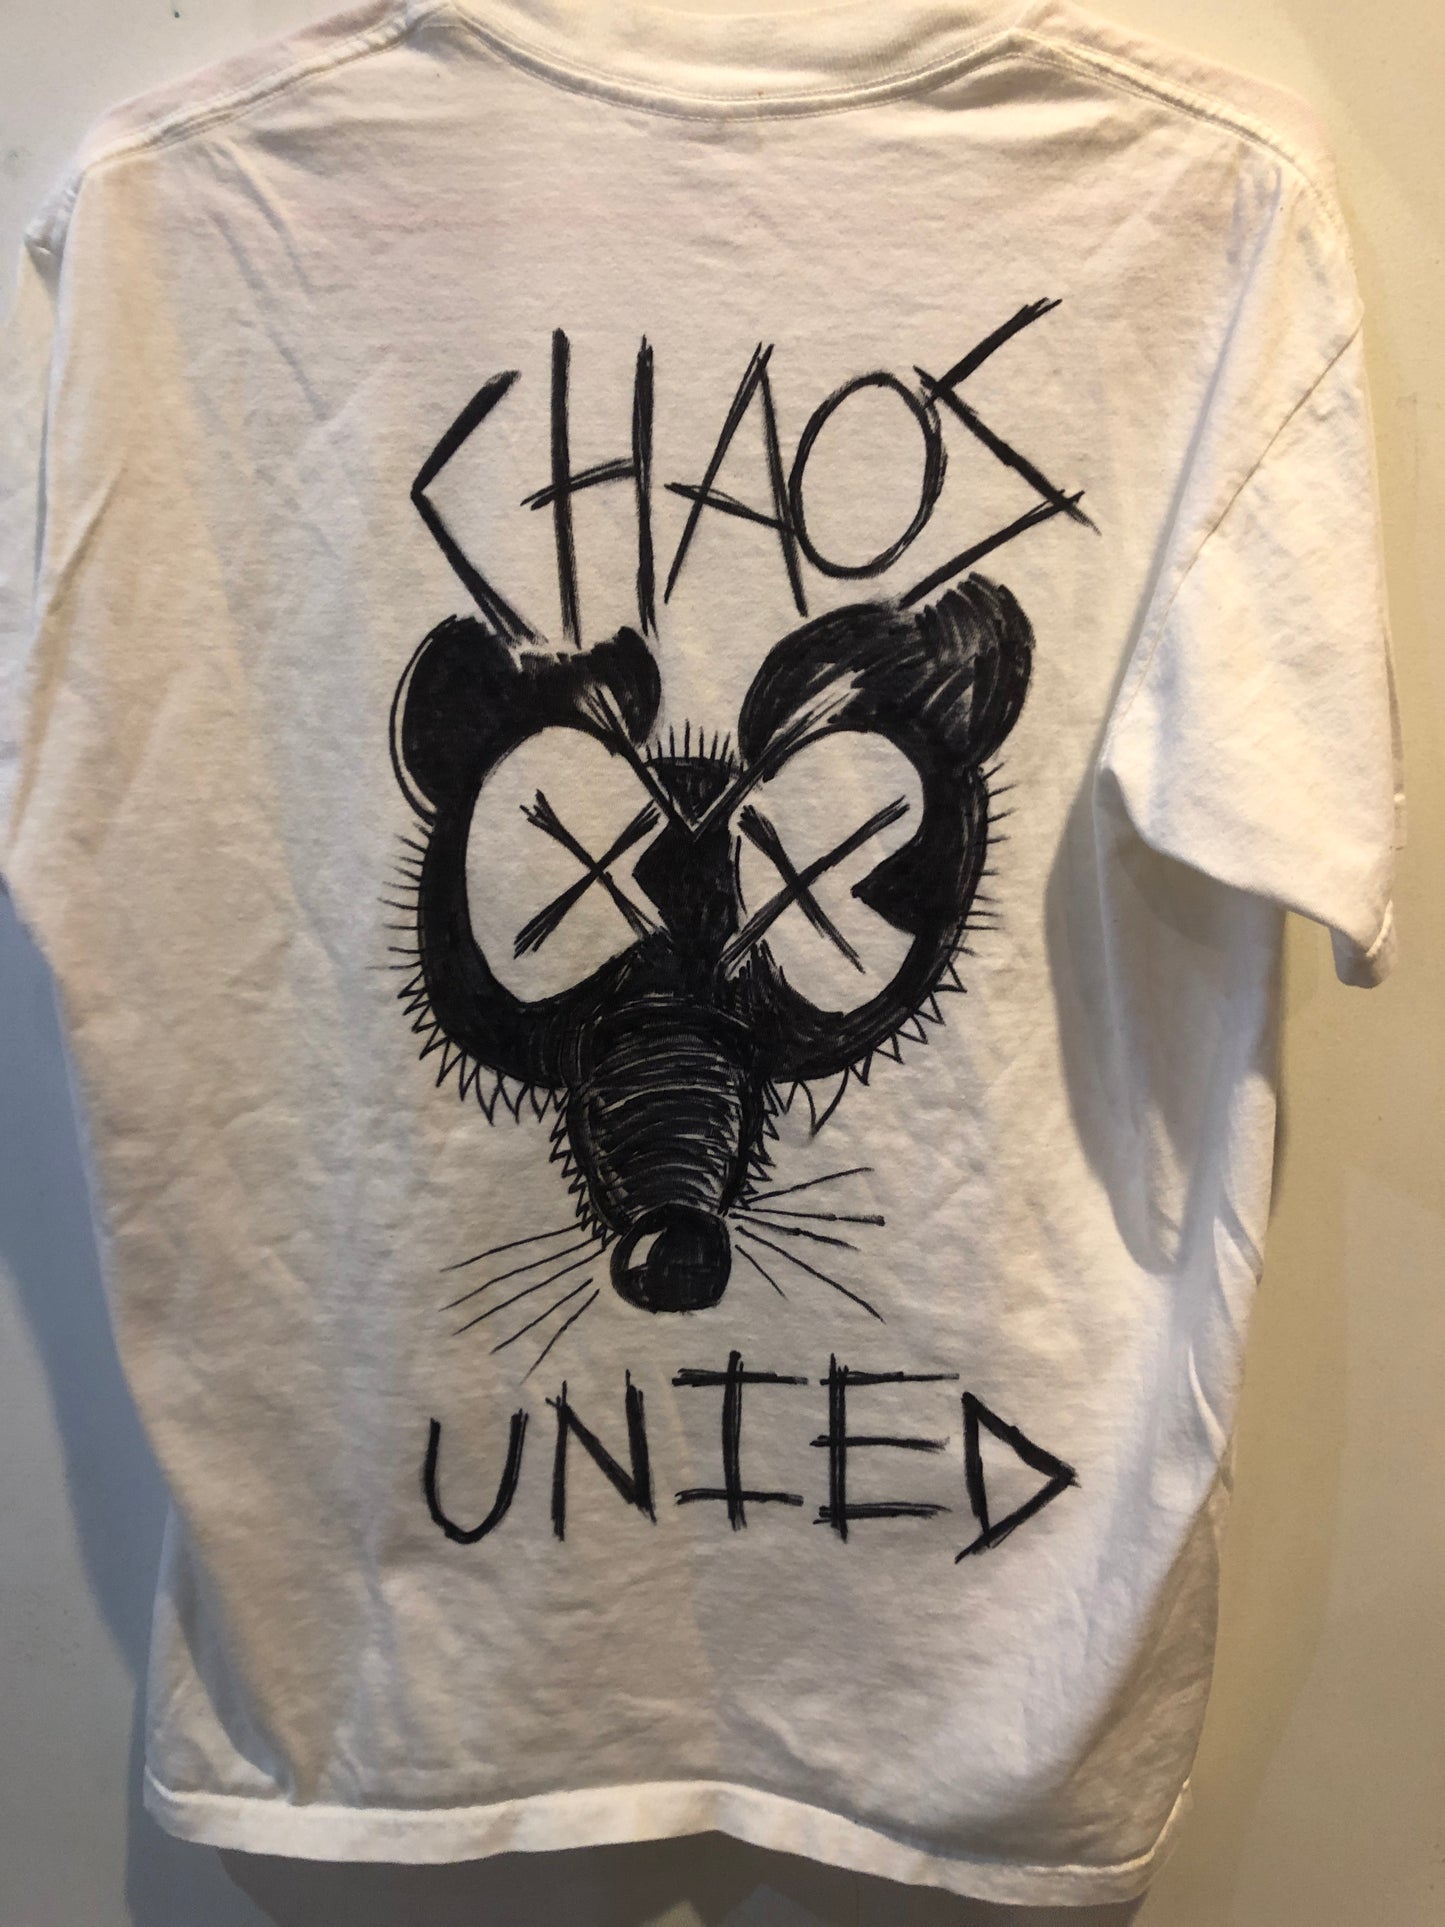 DNGRCT "Respect Chaos" T-Shirt (M)